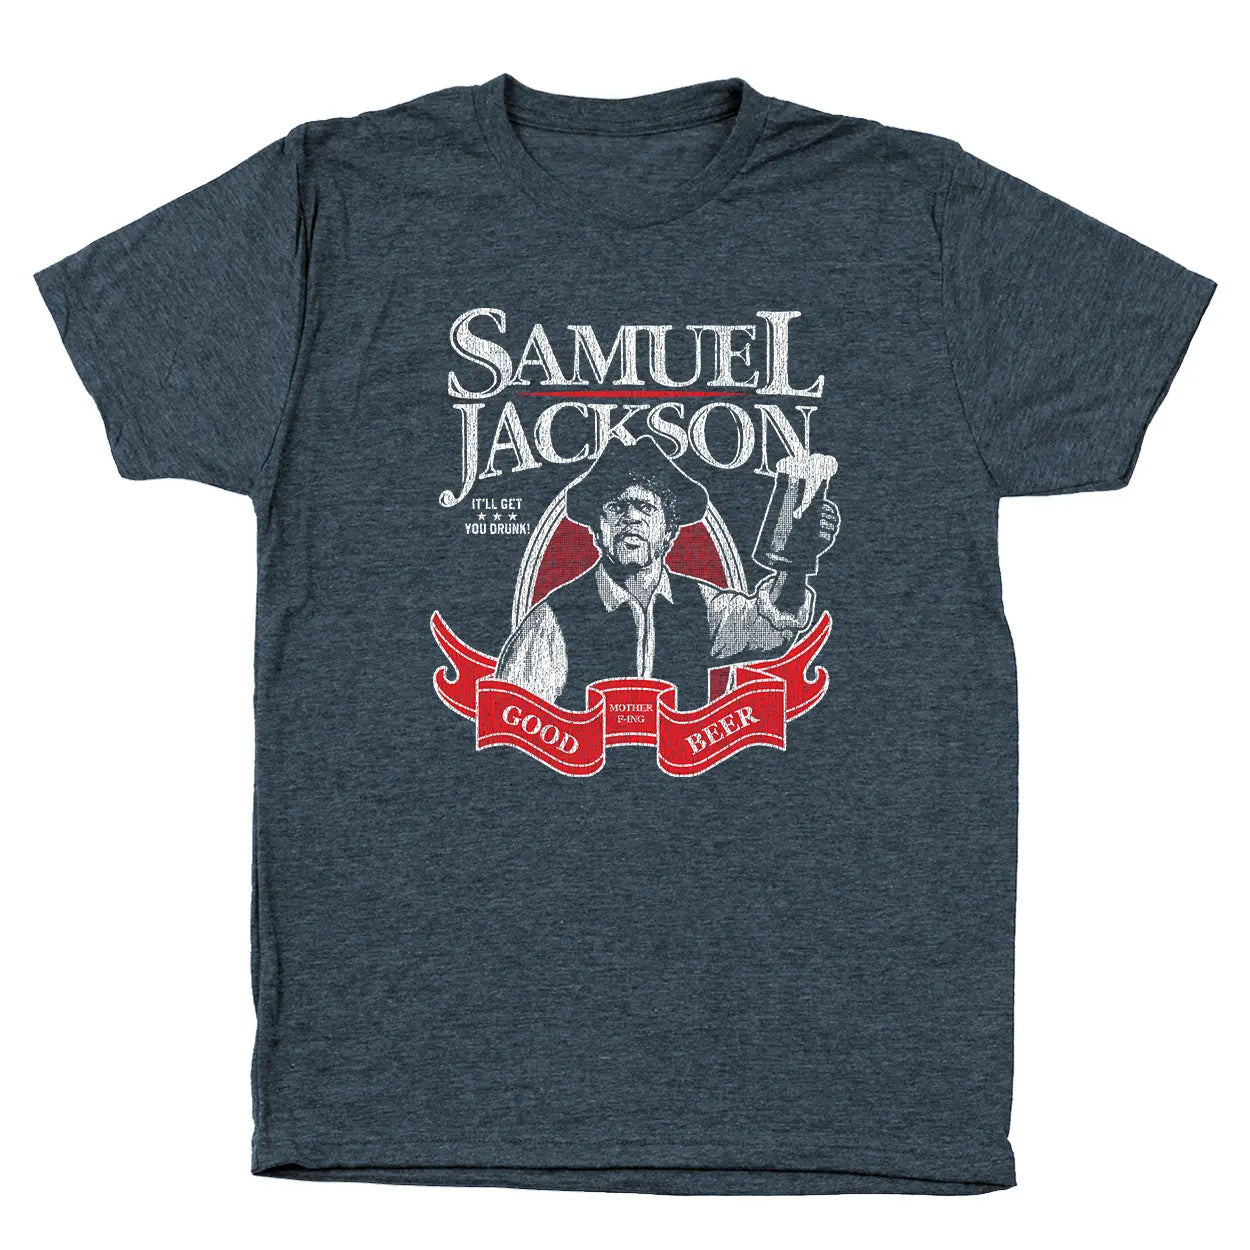 Samuel Jackson Beer Tshirt - Donkey Tees